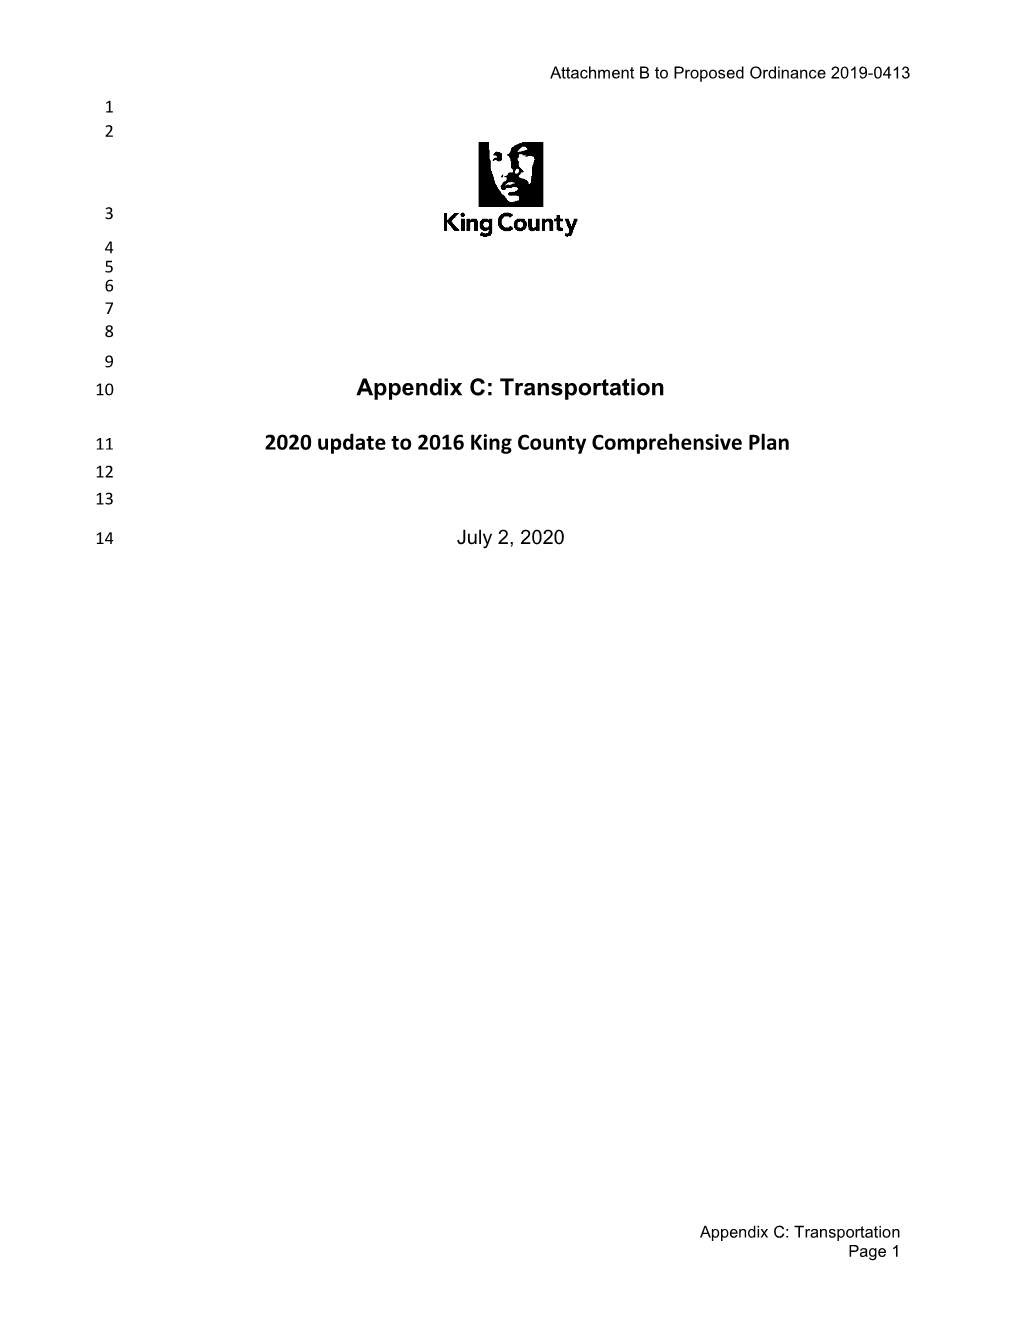 Attachment B – Appendix C: Transportation